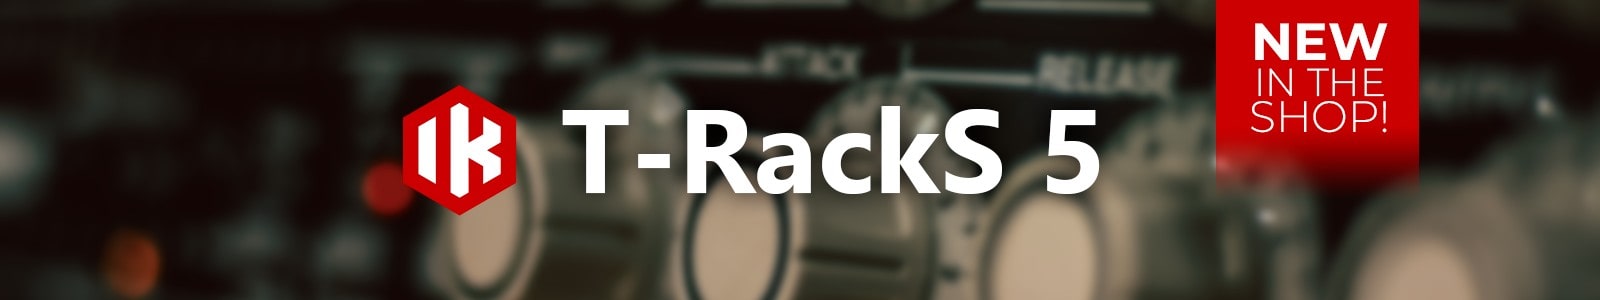 T-RackS 5 v2 by IK Multimedia